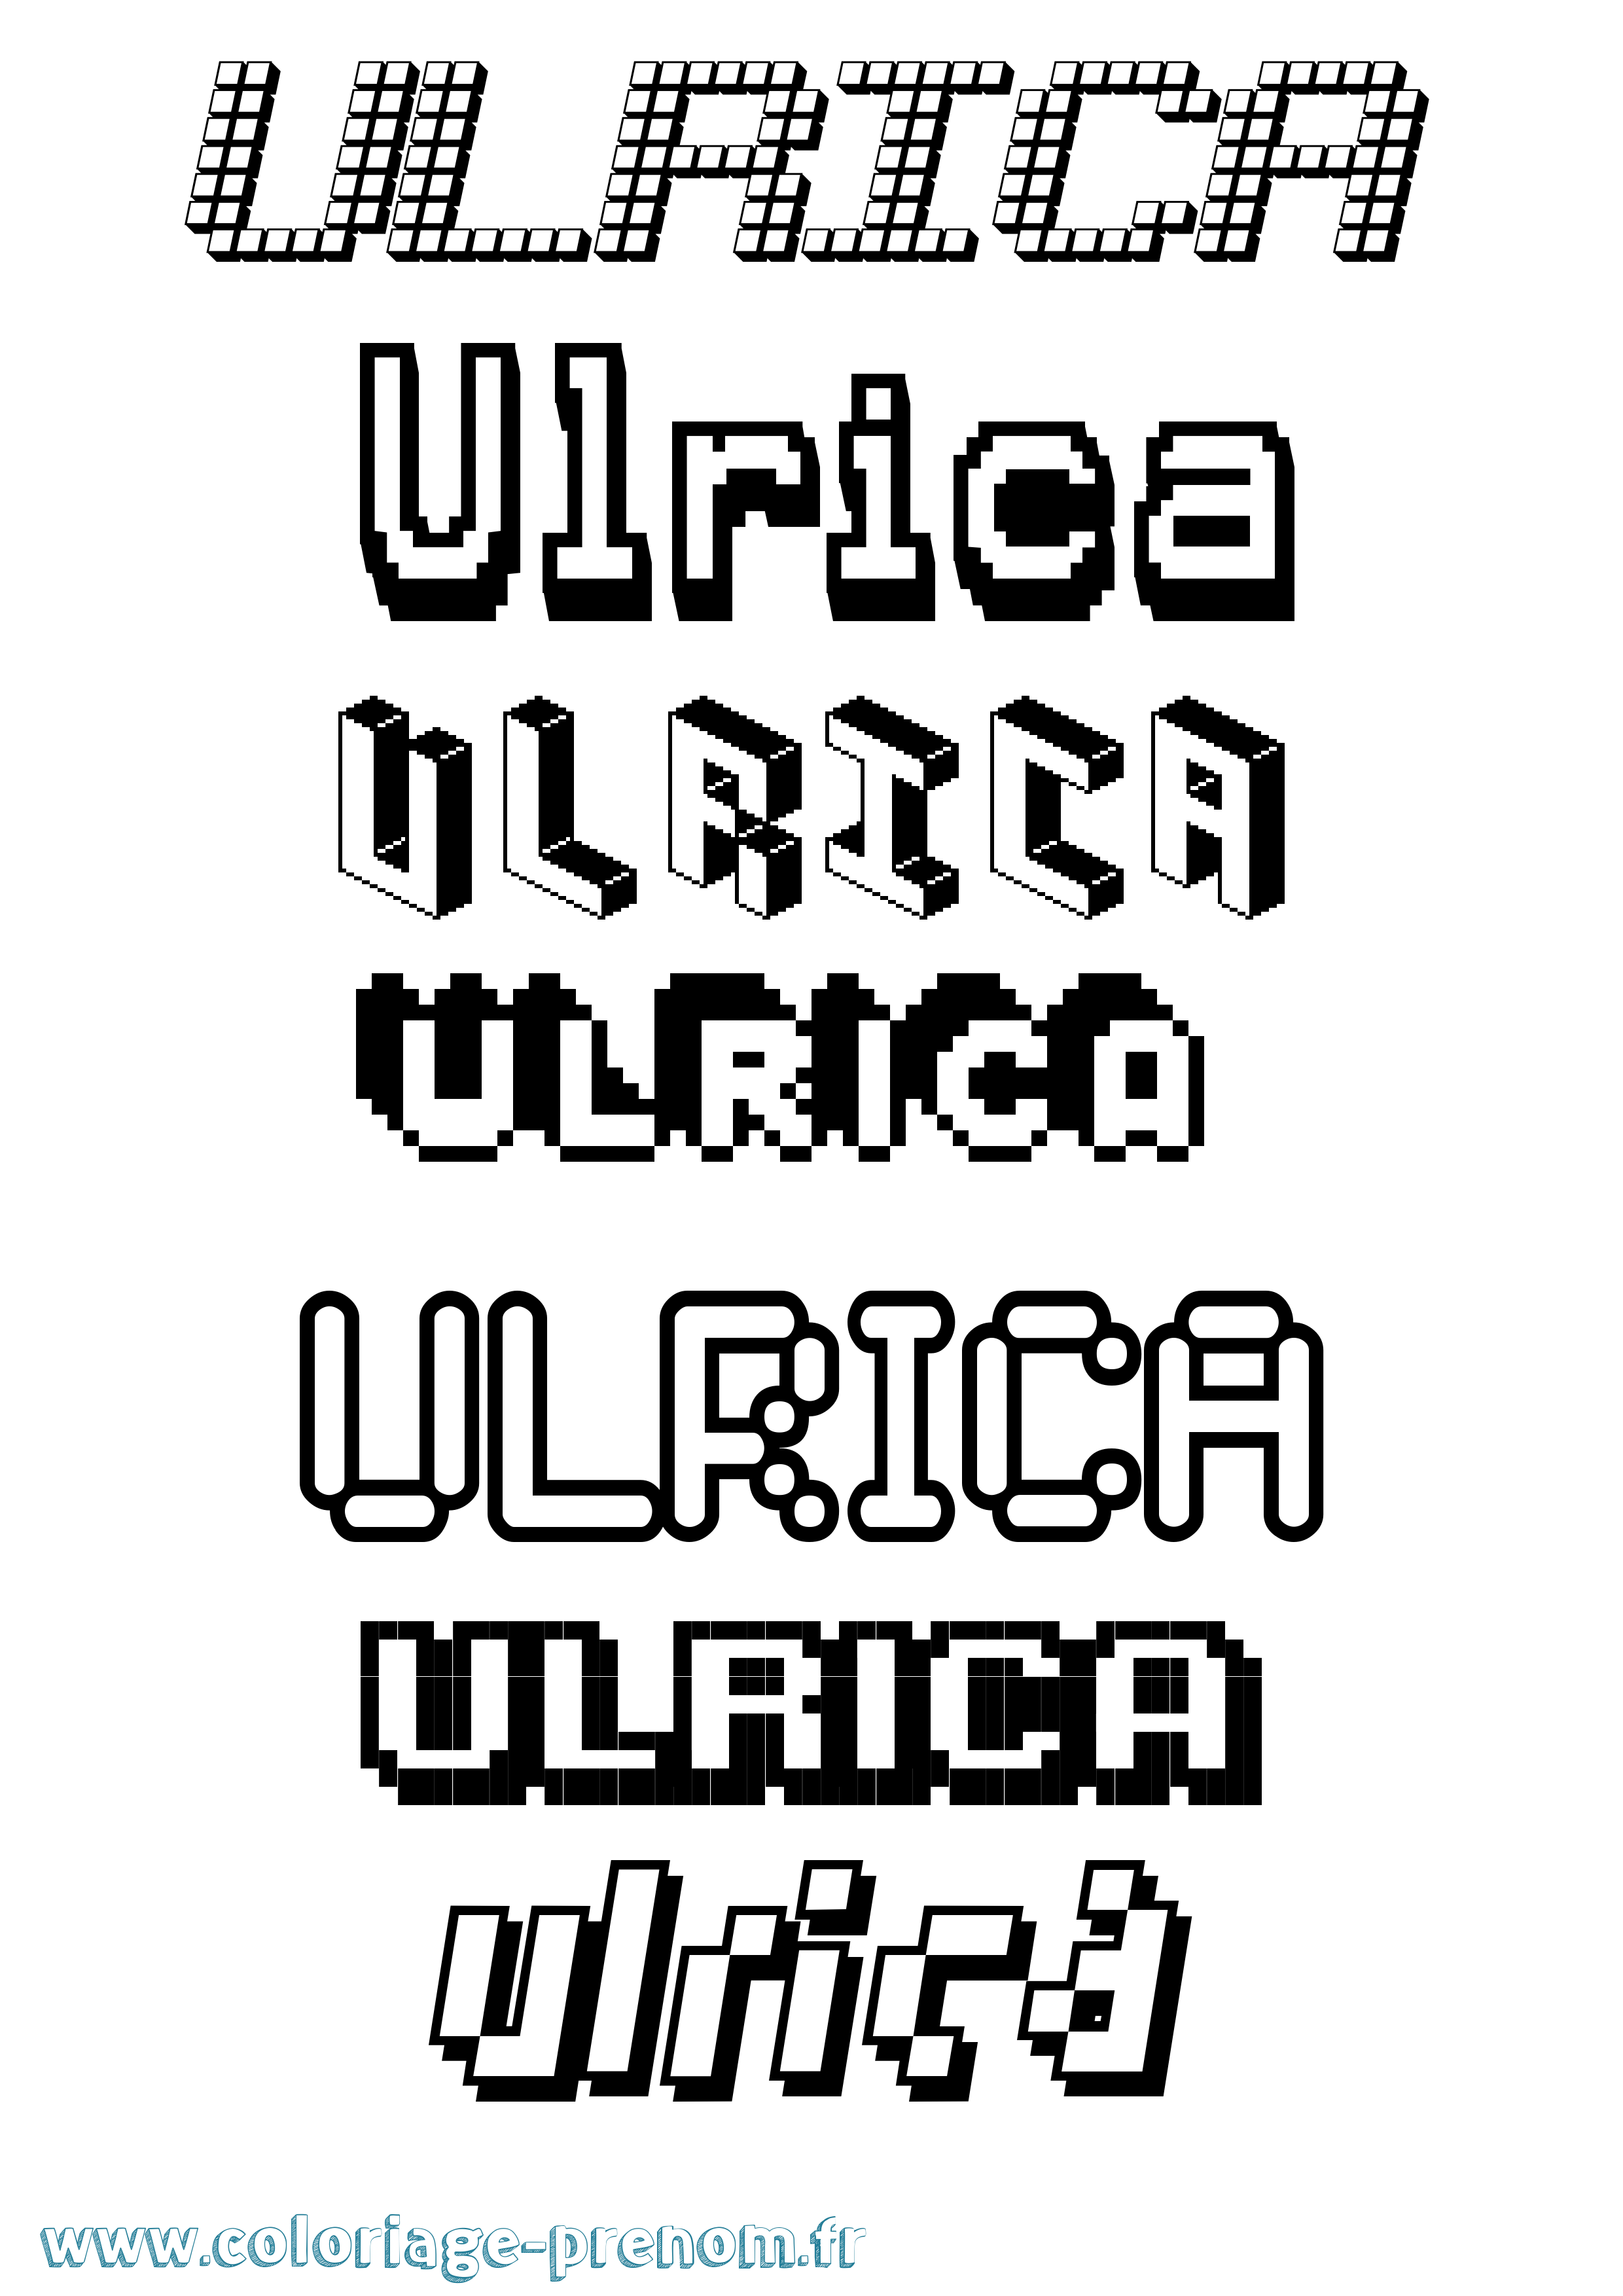 Coloriage prénom Ulrica Pixel